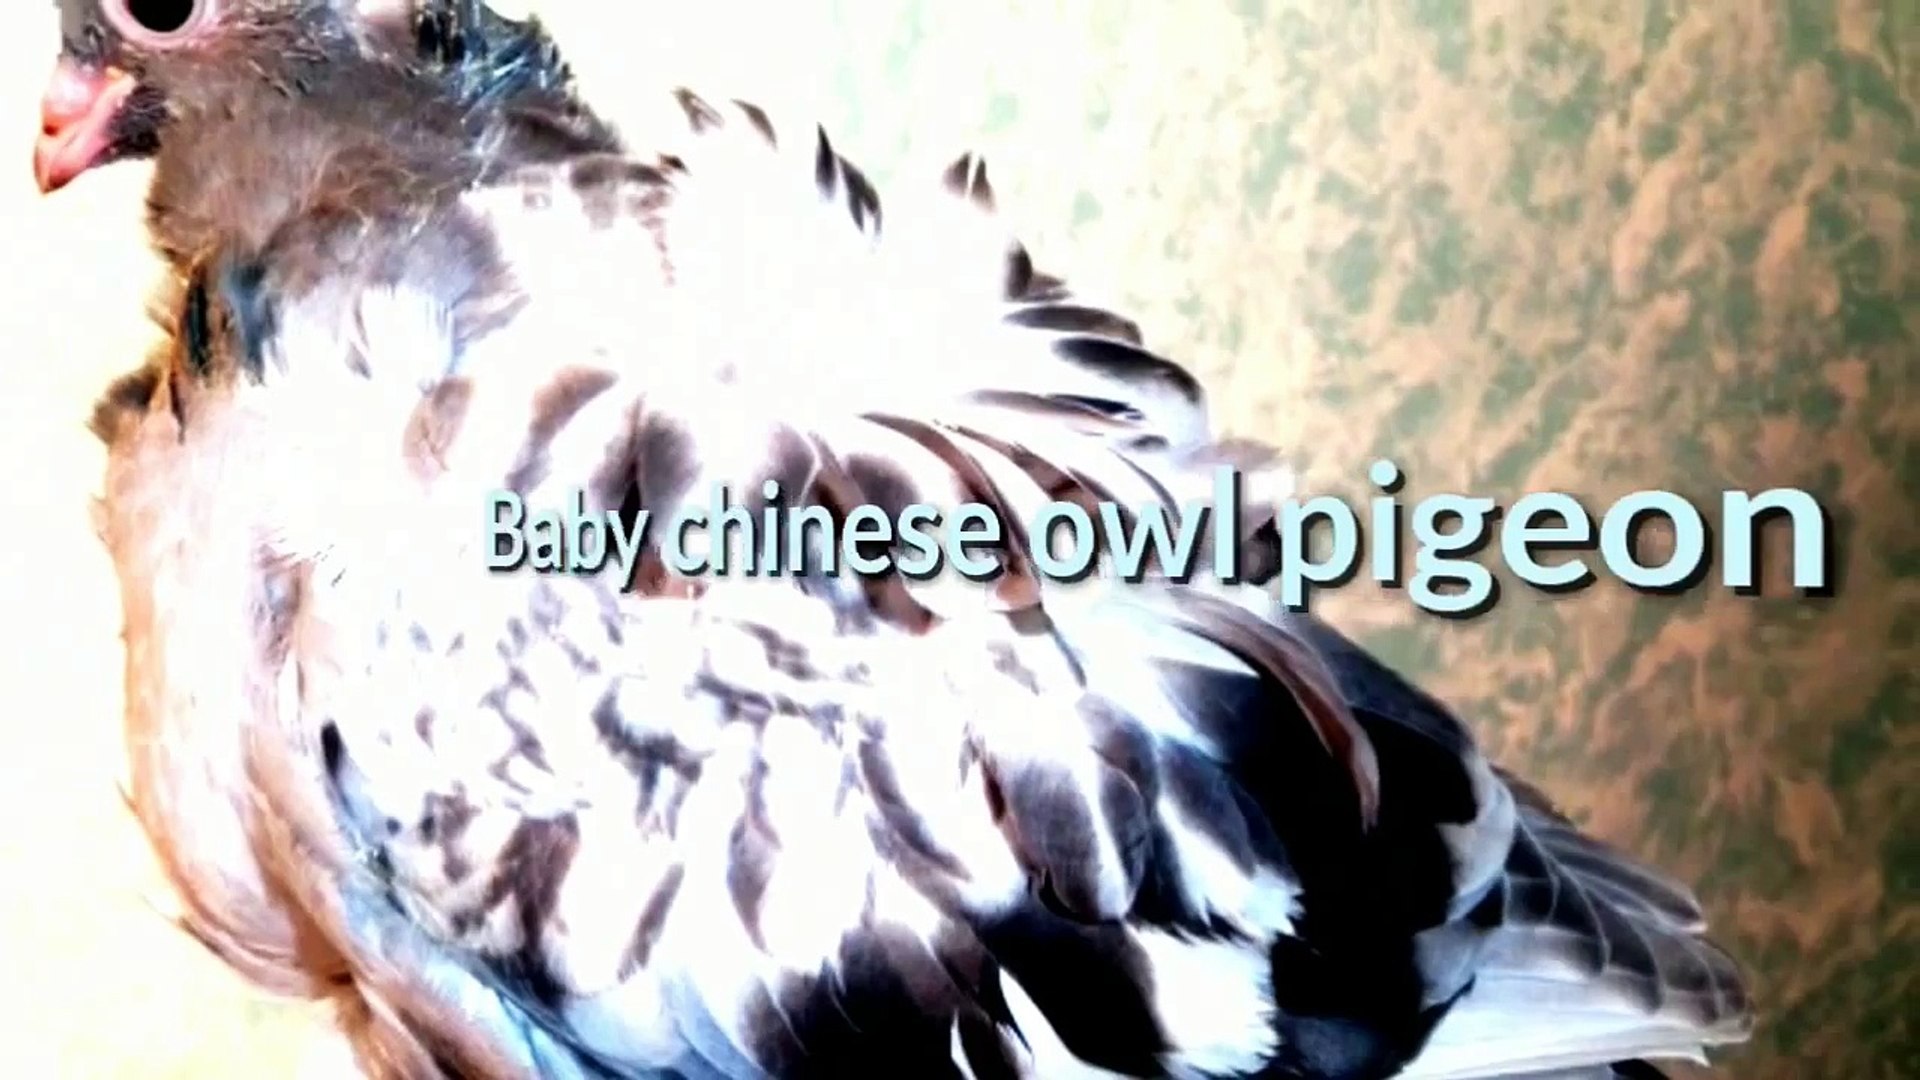 أنواع الحمام -حمامة البومة الصينية- كشكي طرفين وردة Chinese Owl Pigeon -  Dailymotion Video